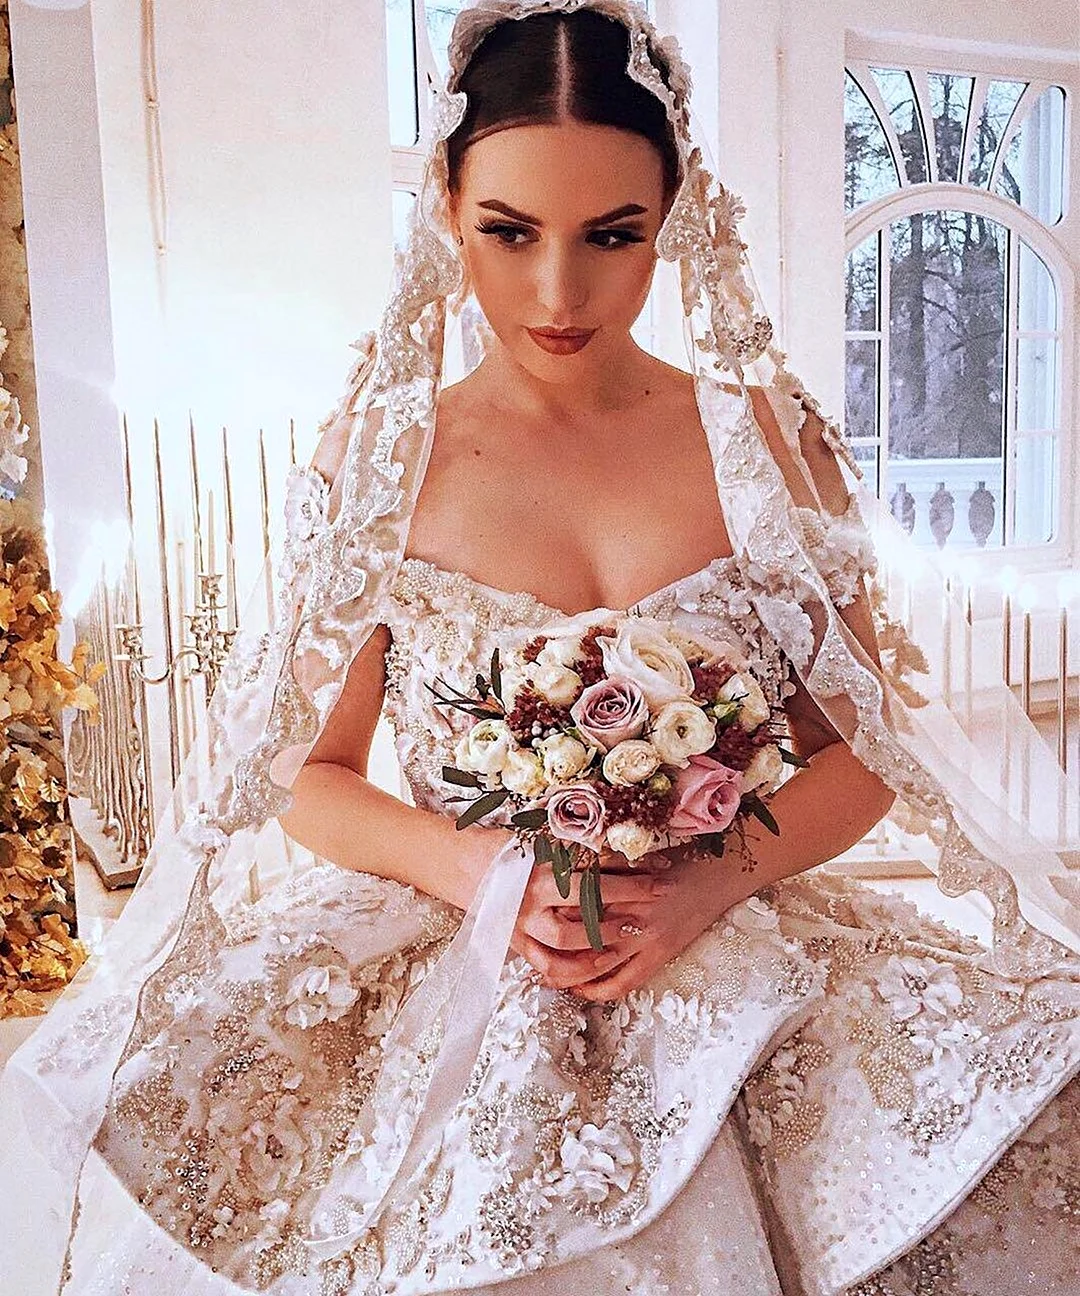 Свадьба Саши Артемовой и Евгения Кузина. Красивая девушка